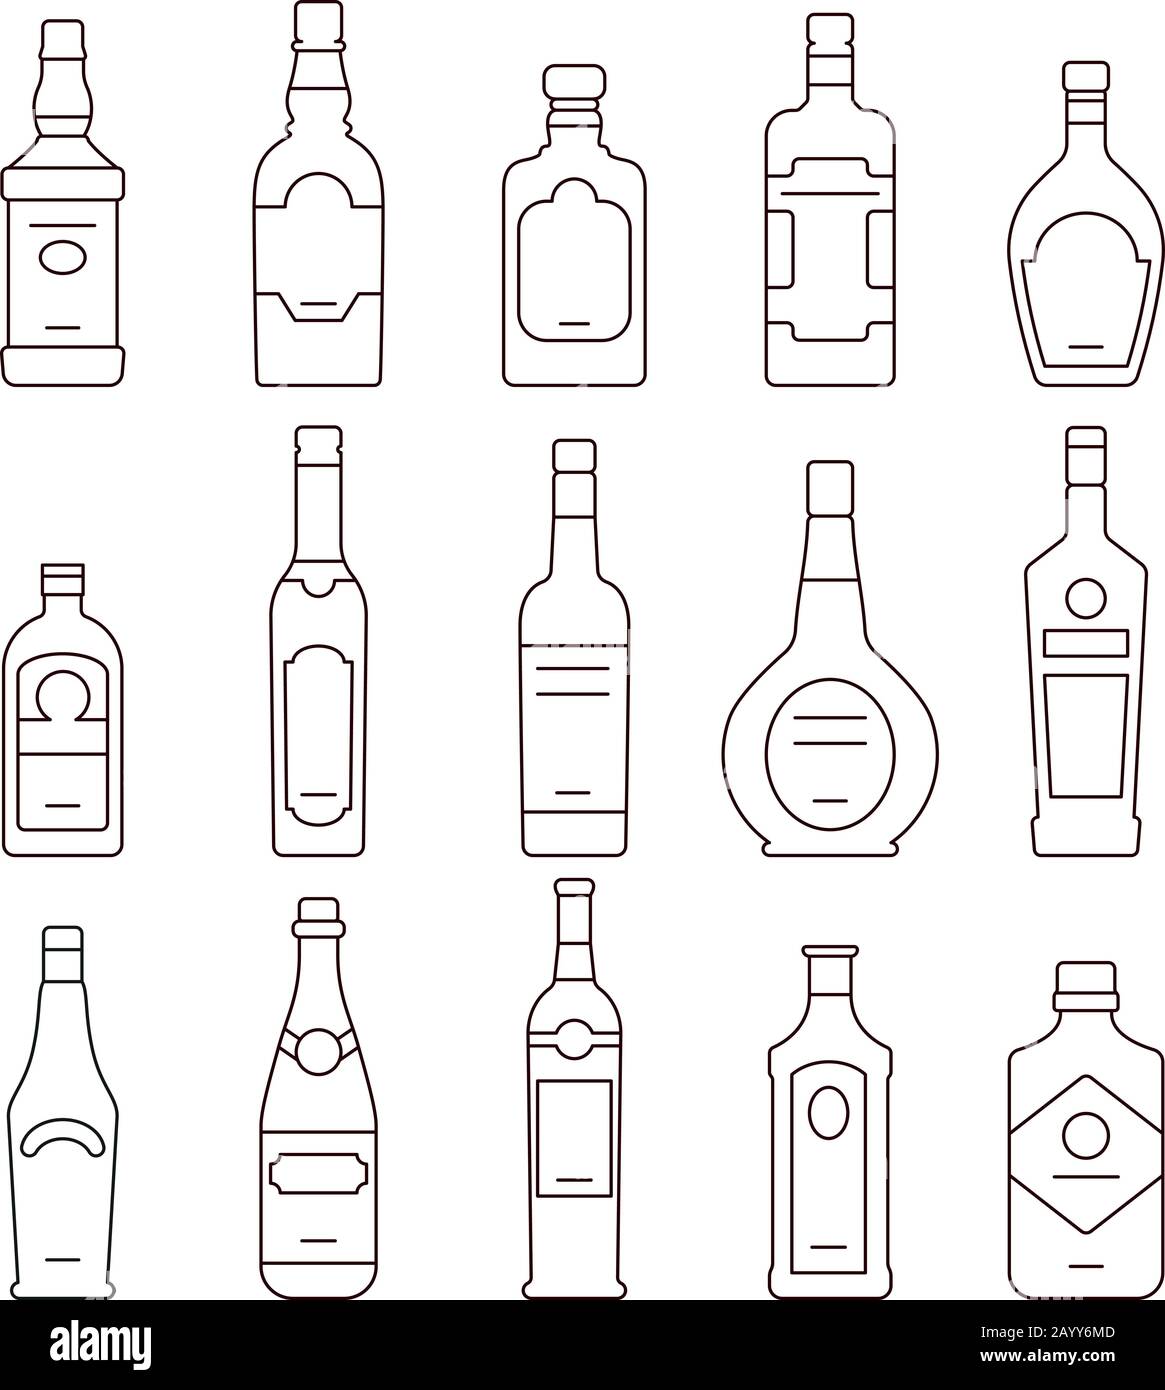 Bouteilles de boissons alcoolisées. Types de bouteilles de contour d'alcool, jeu d'icônes bouteilles illustration vectorielle Illustration de Vecteur